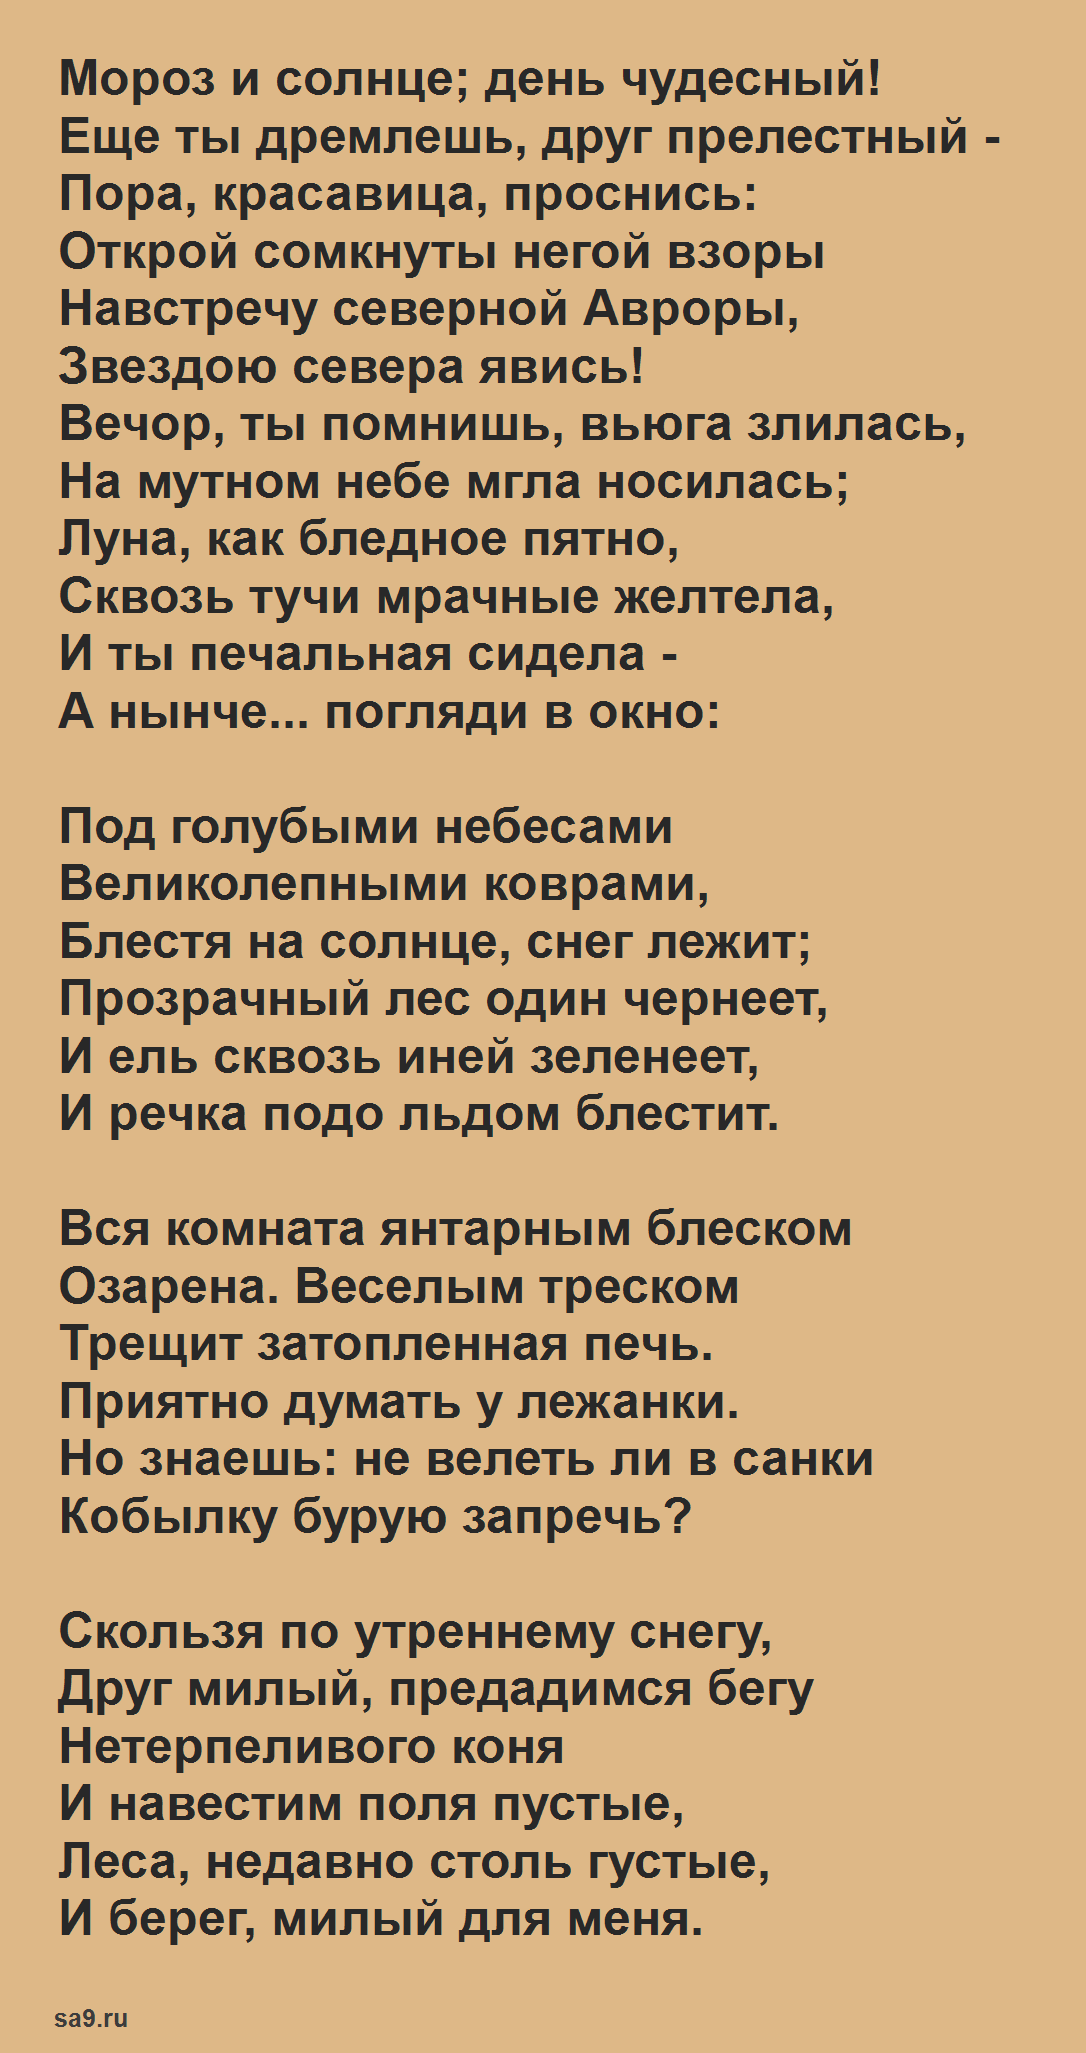 Стихи Пушкина о зиме - Зимнее утро